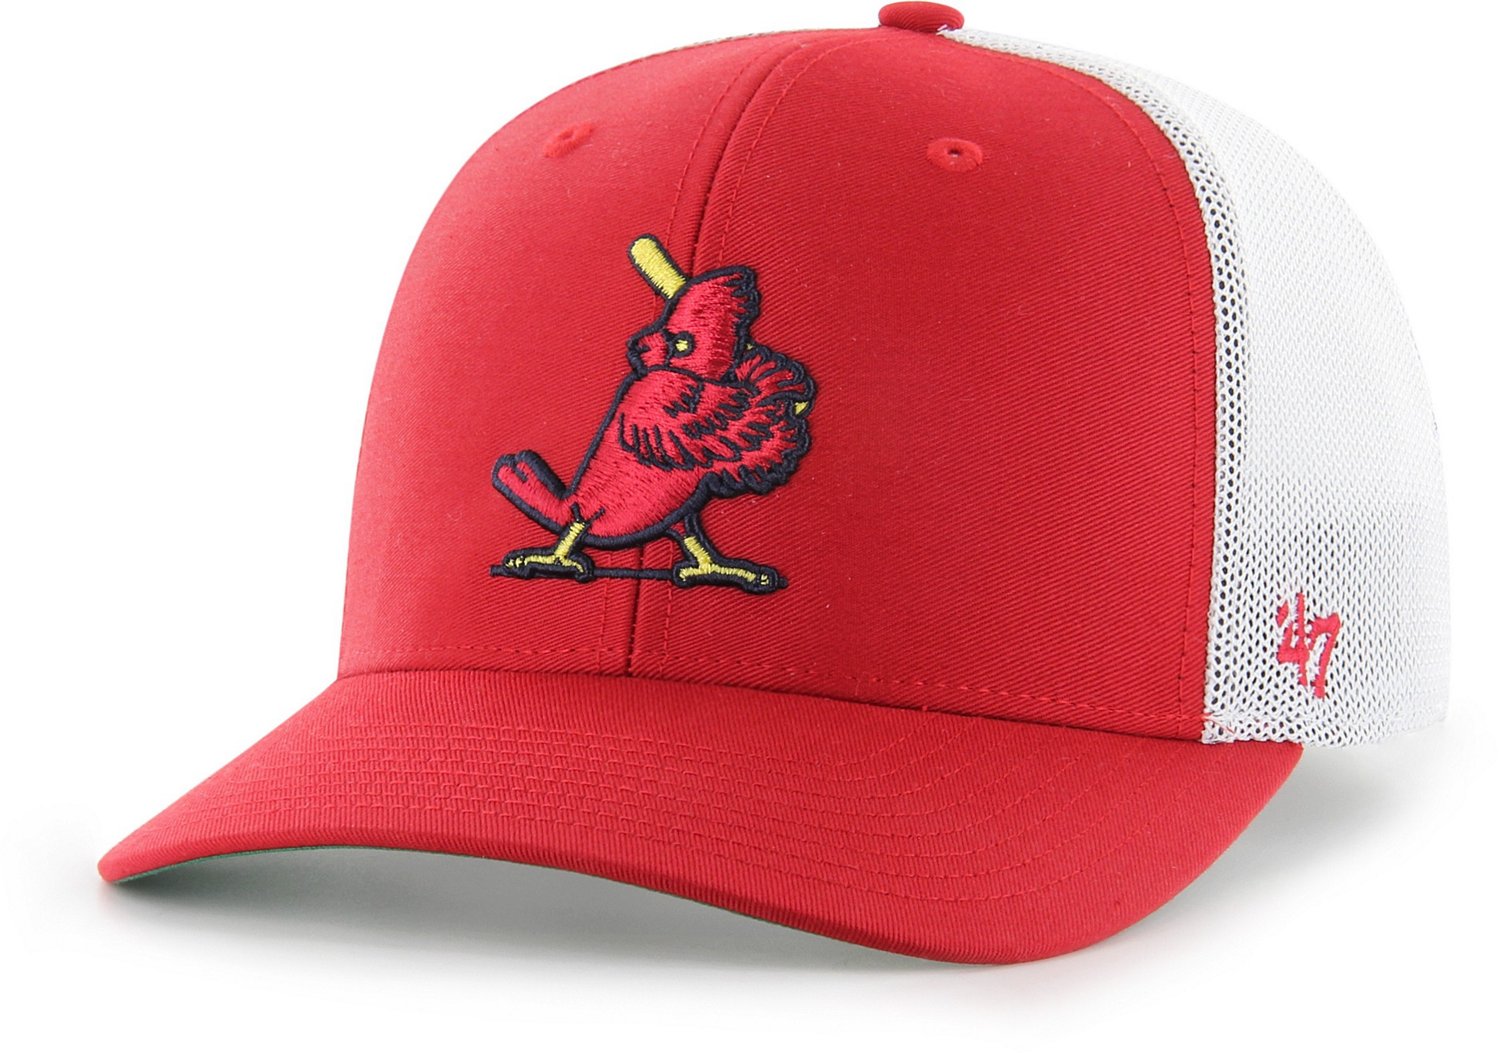 Men's St. Louis Cardinals '47 Red Panama Pail Bucket Hat